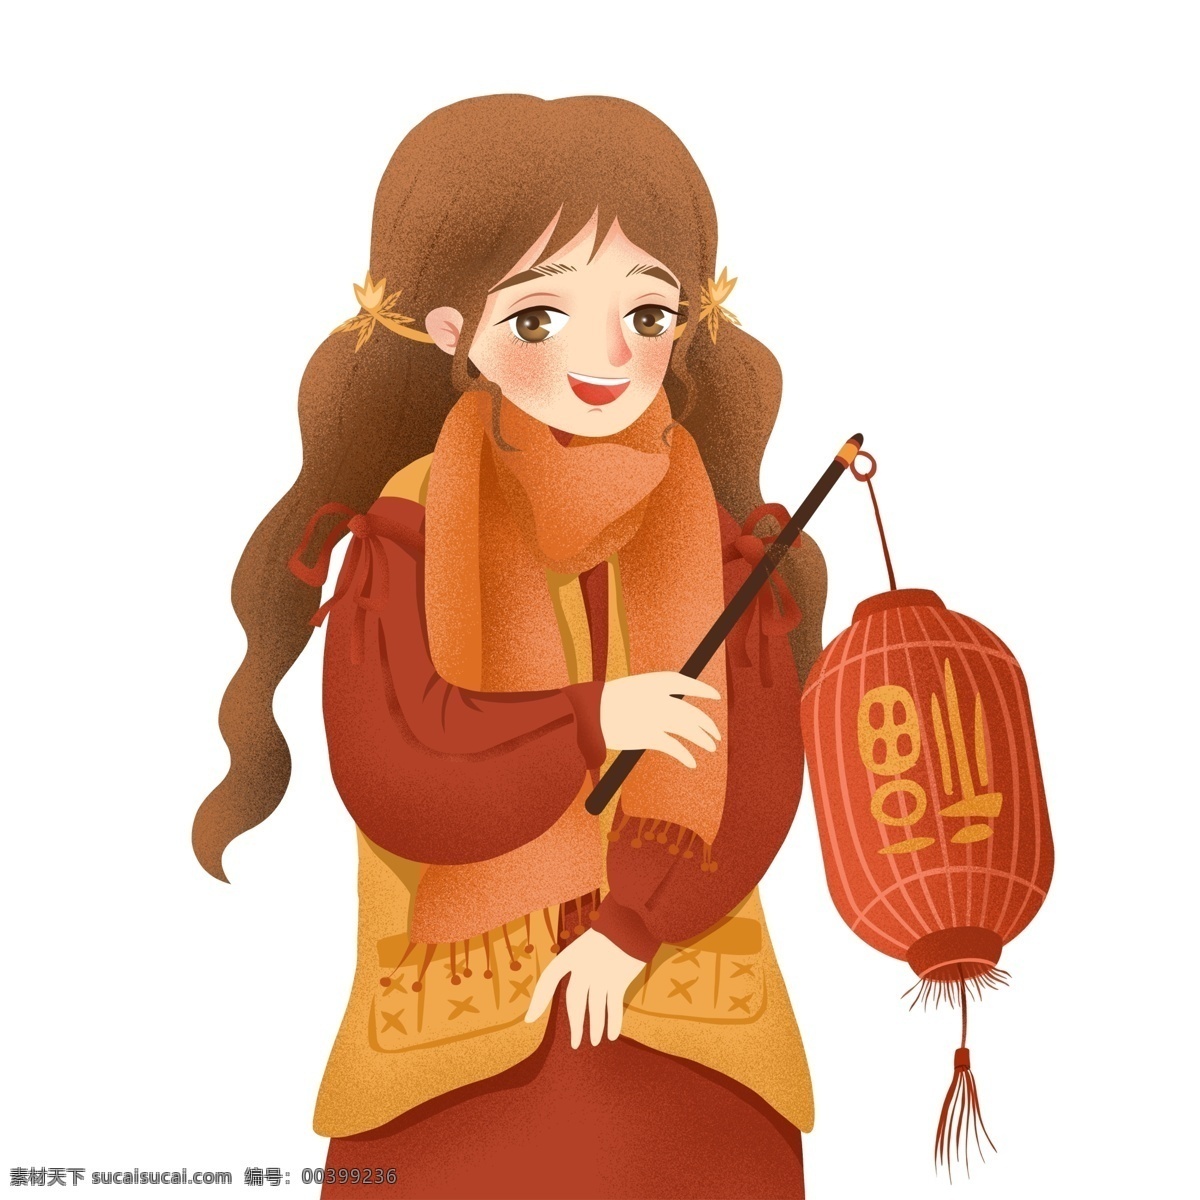 喜庆 过年 提 灯笼 女孩 清新 春节 手绘 新年 2019年 猪年元素